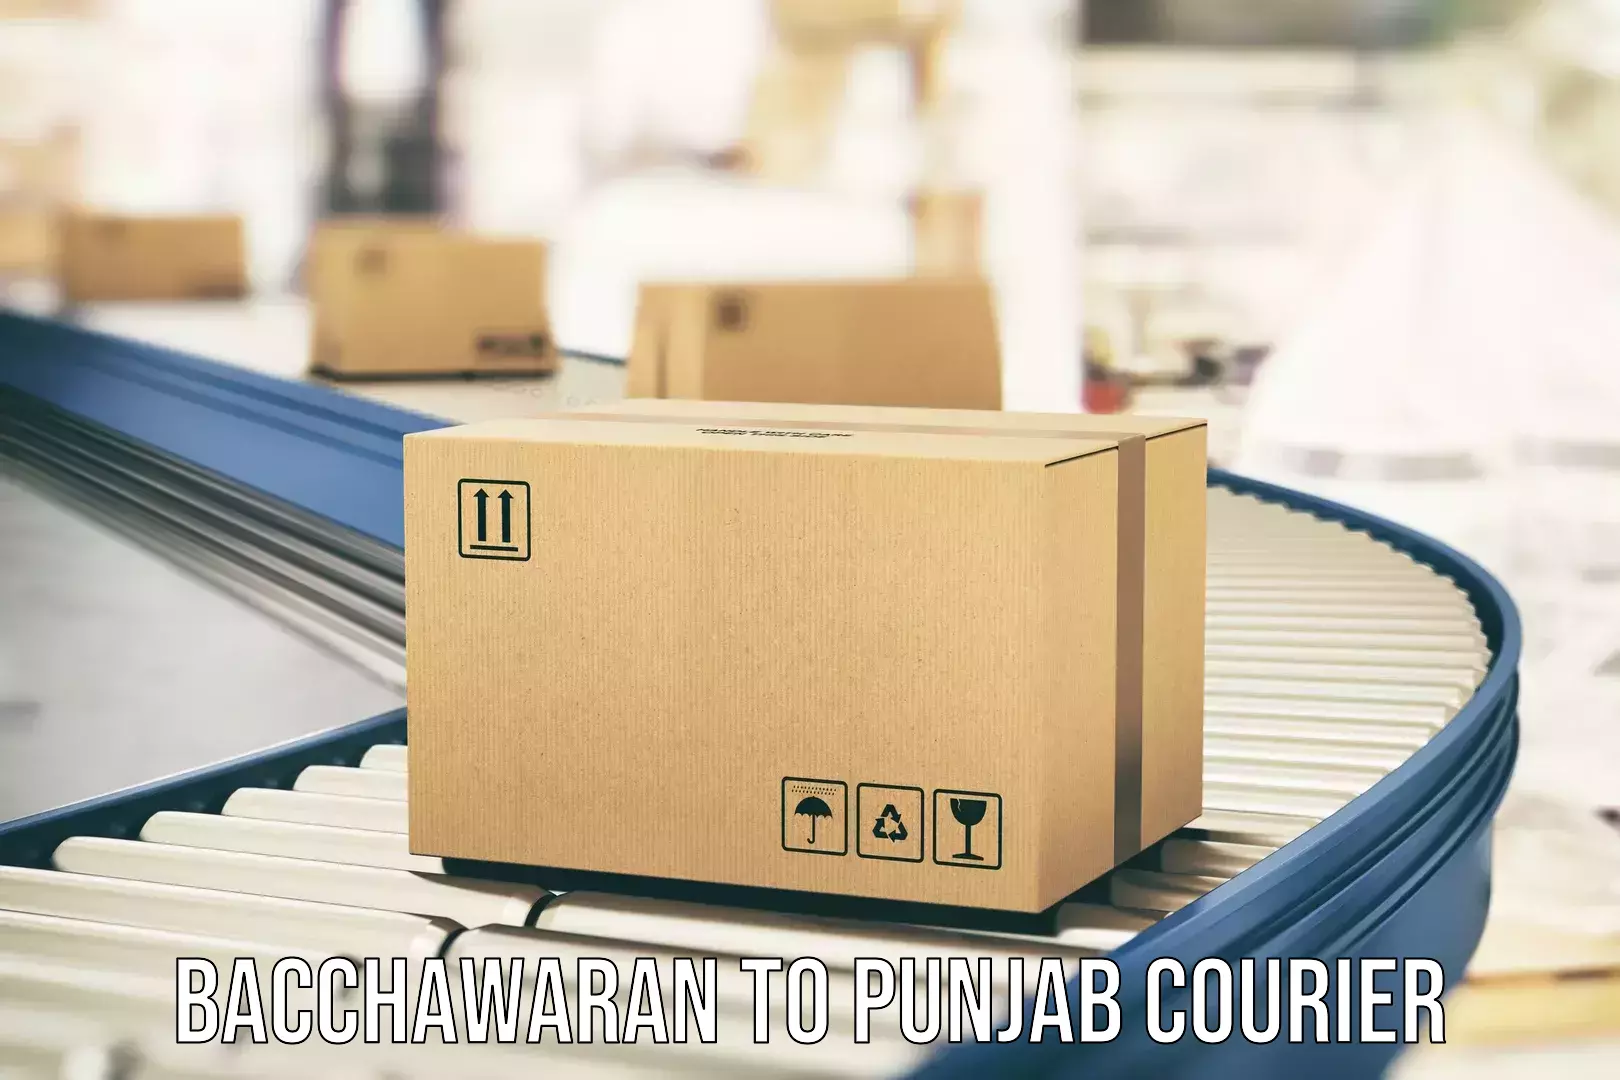 Furniture moving assistance Bacchawaran to Punjab